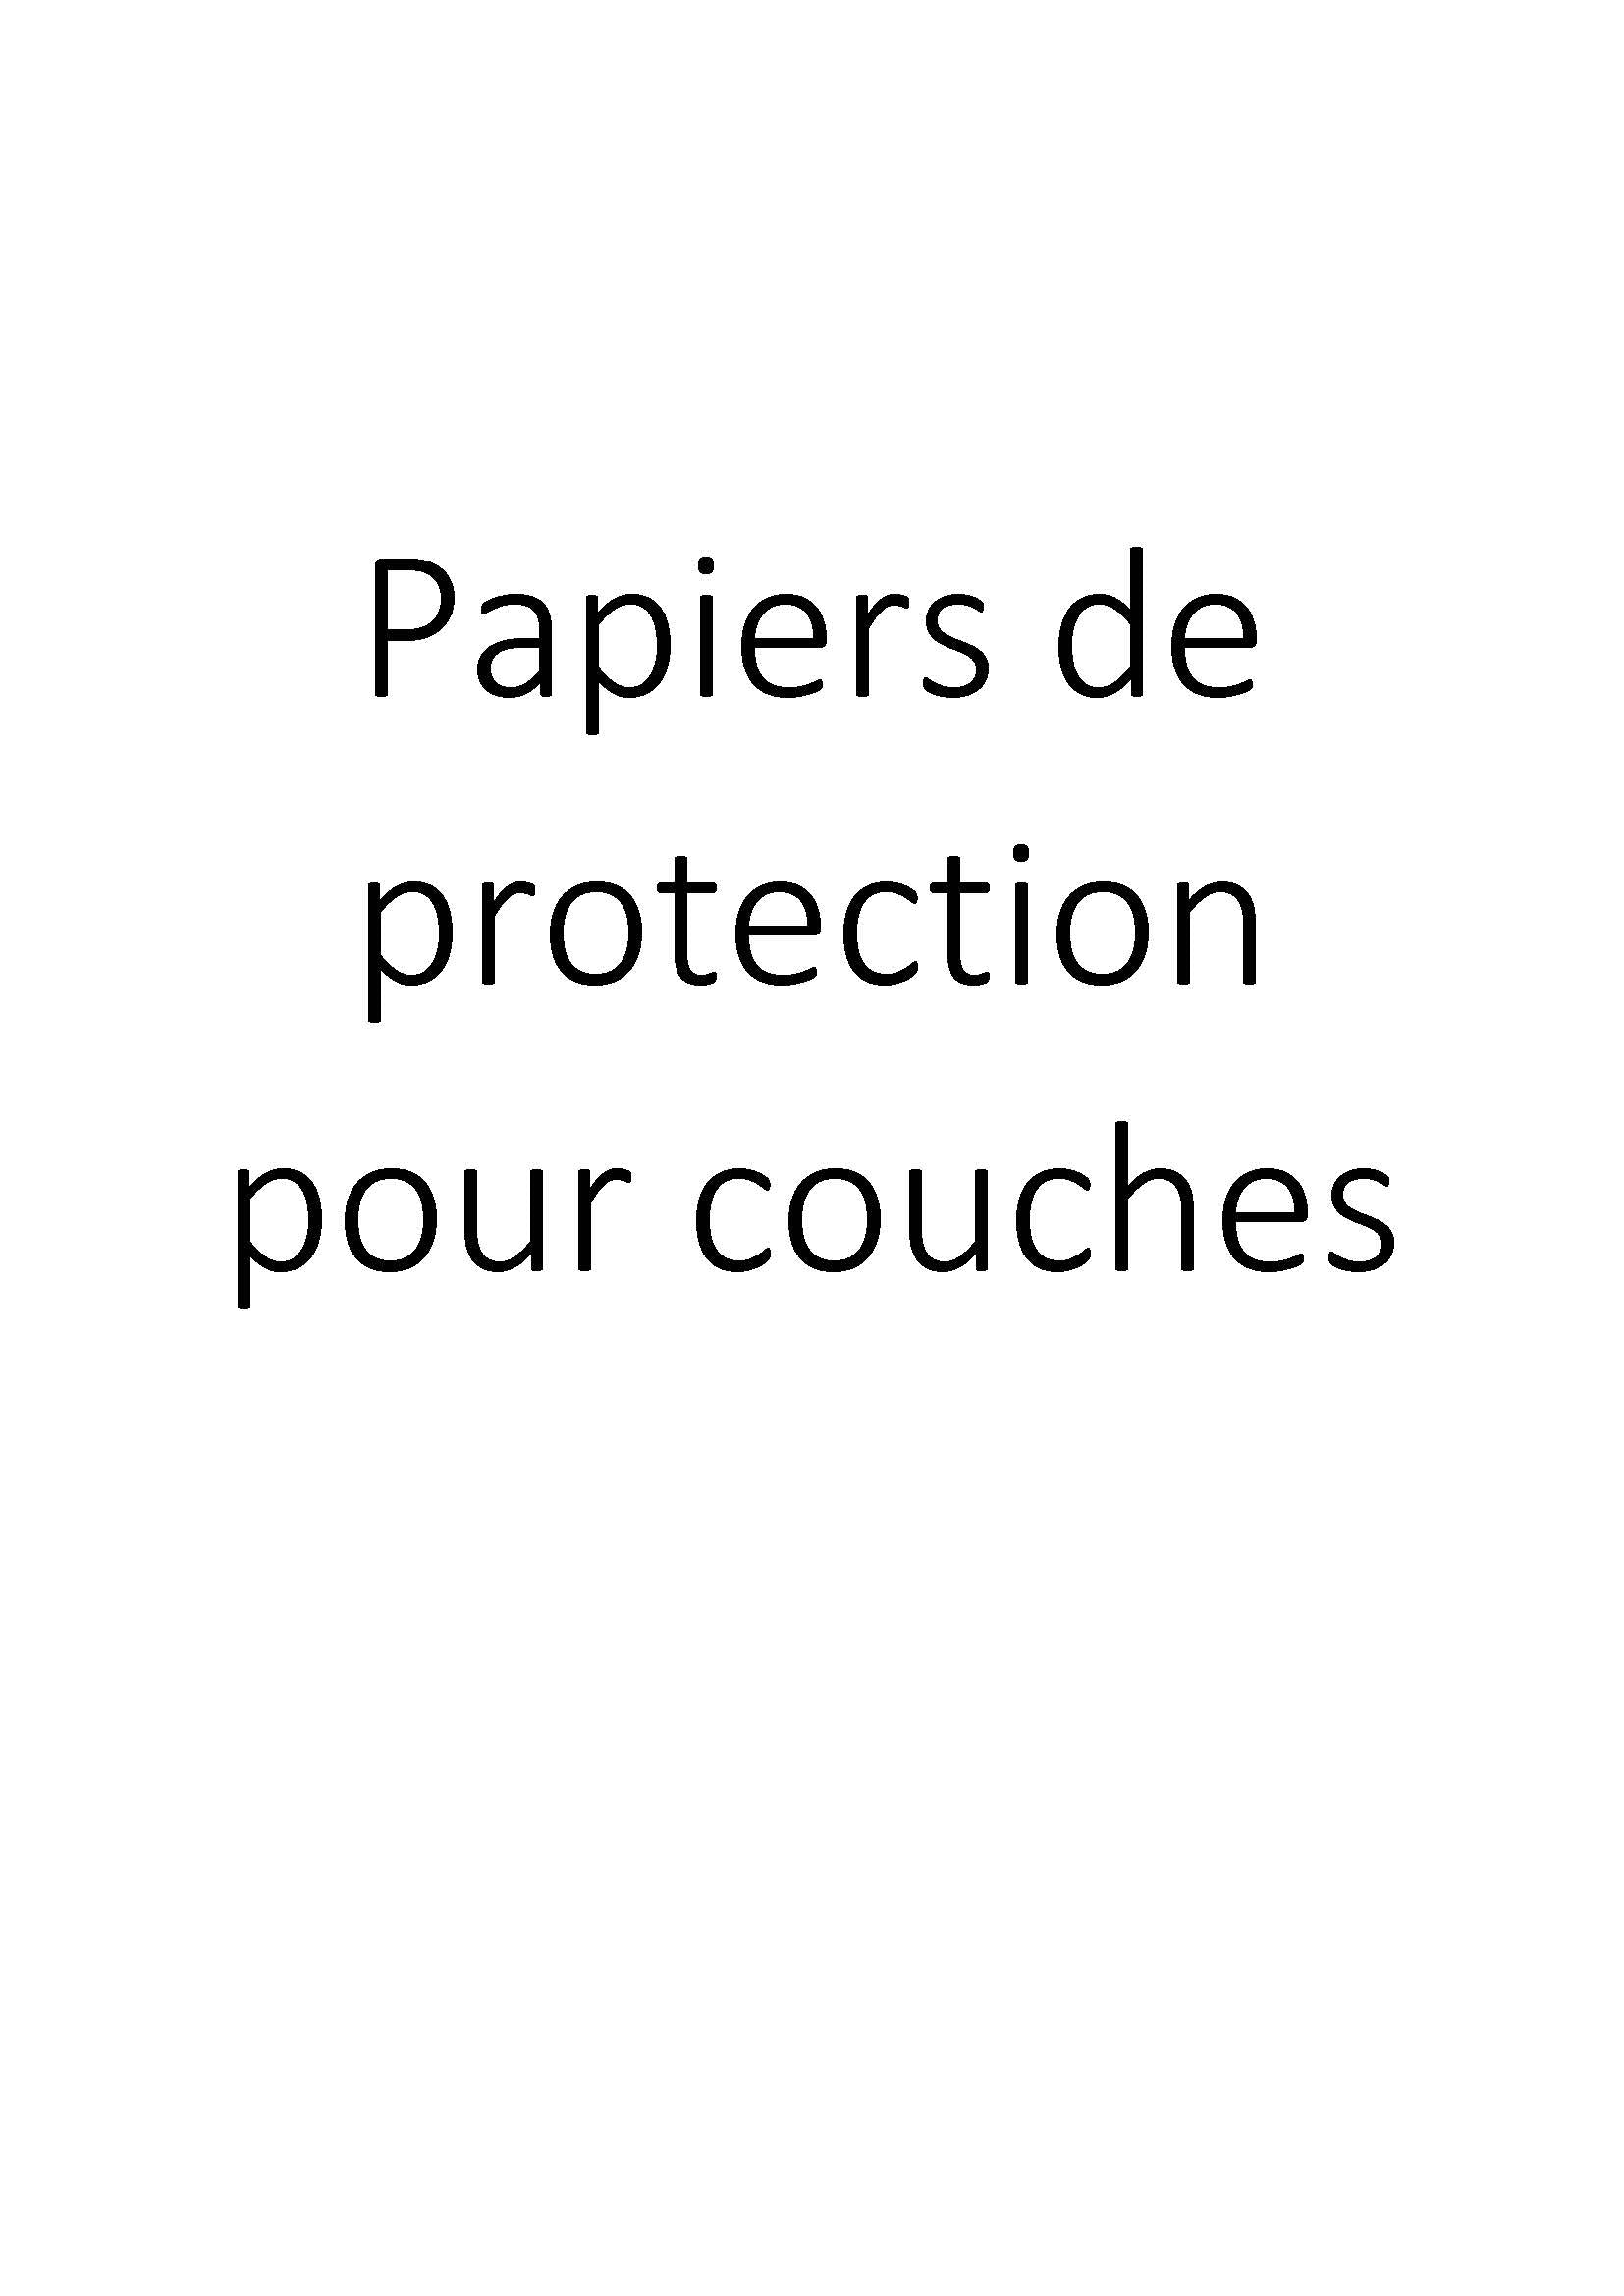 Papiers de protection pour couches clicktofournisseur.com